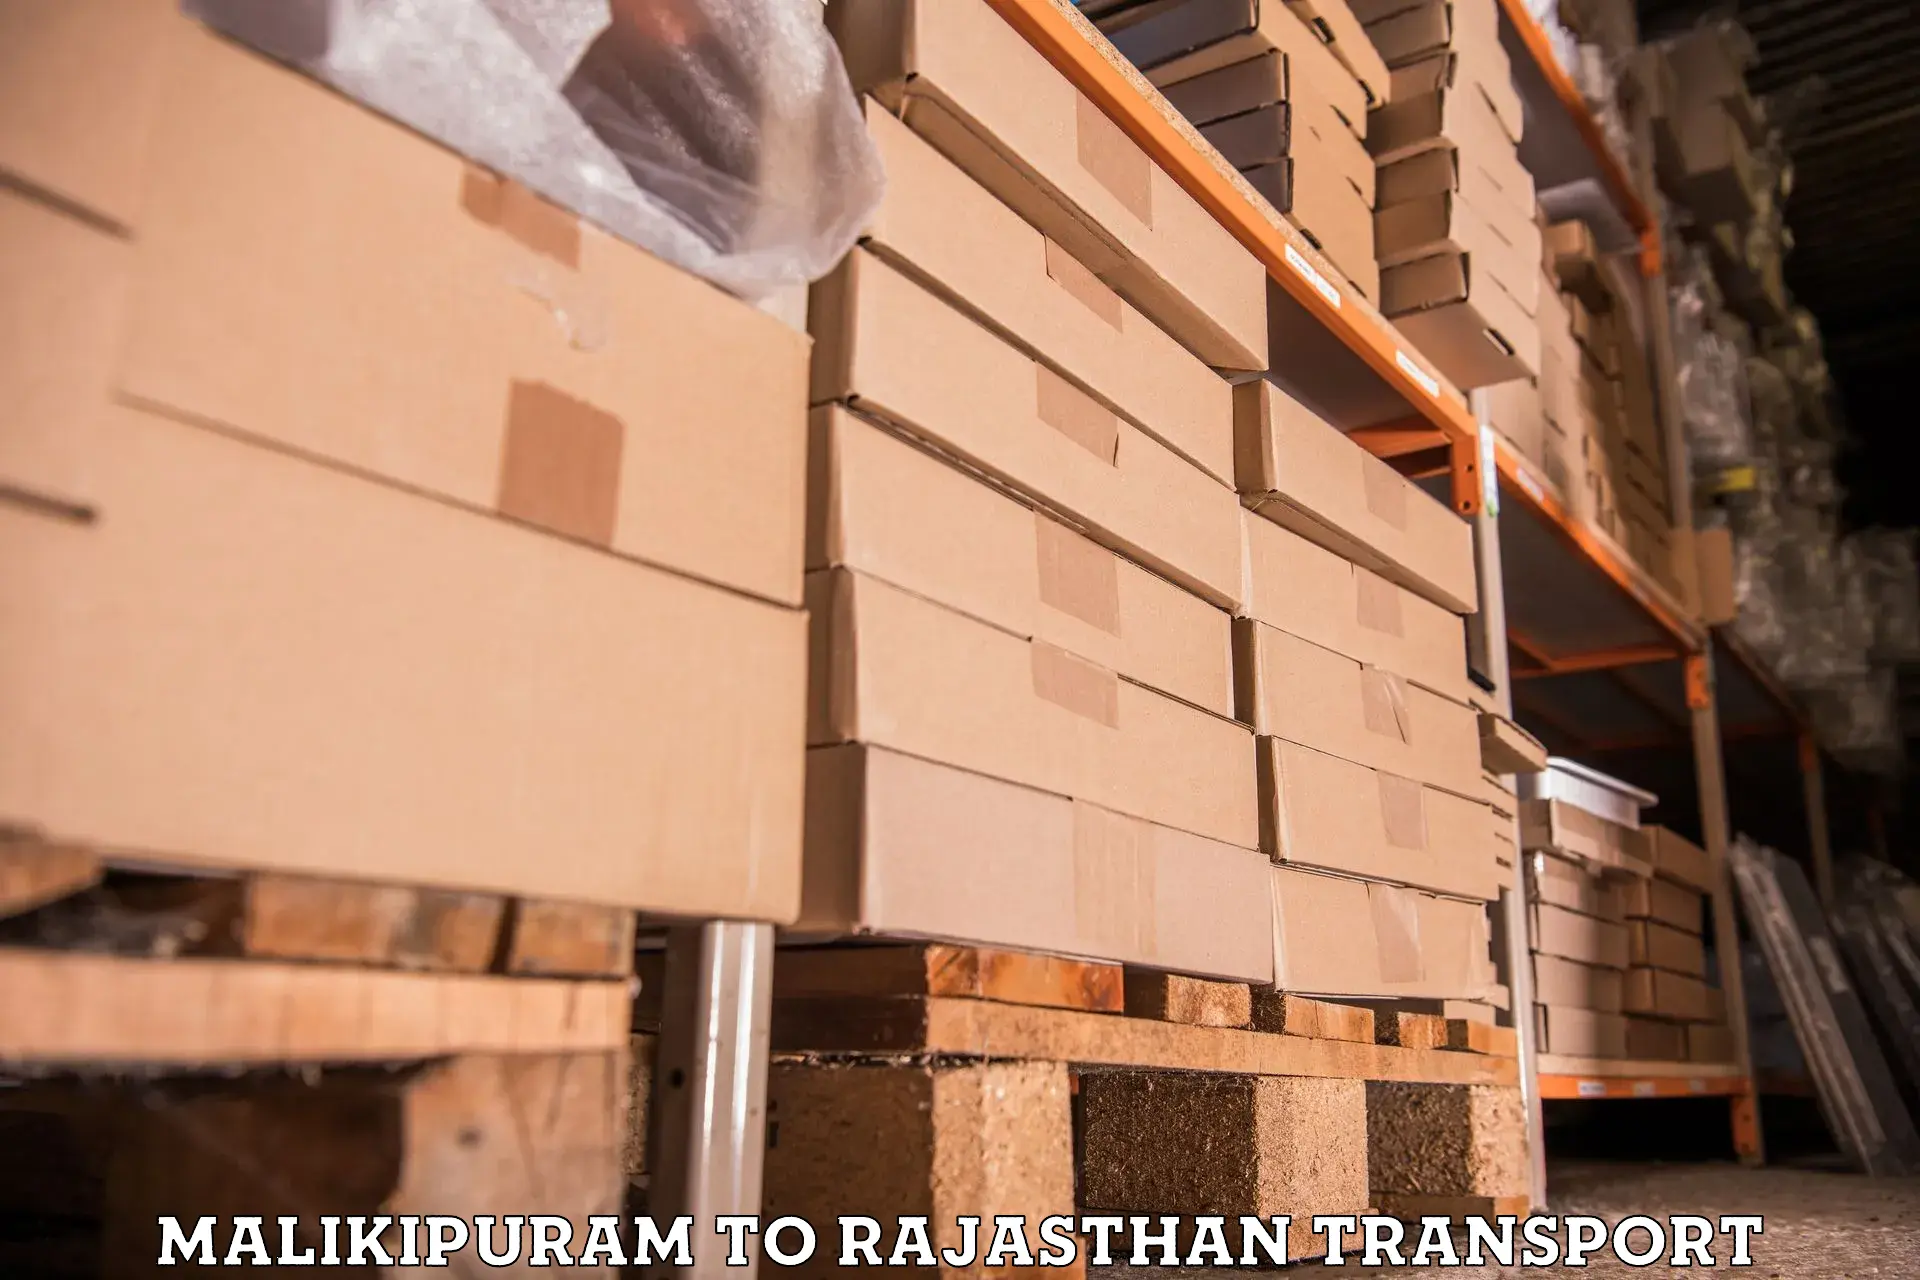 Cargo transport services Malikipuram to Nokha